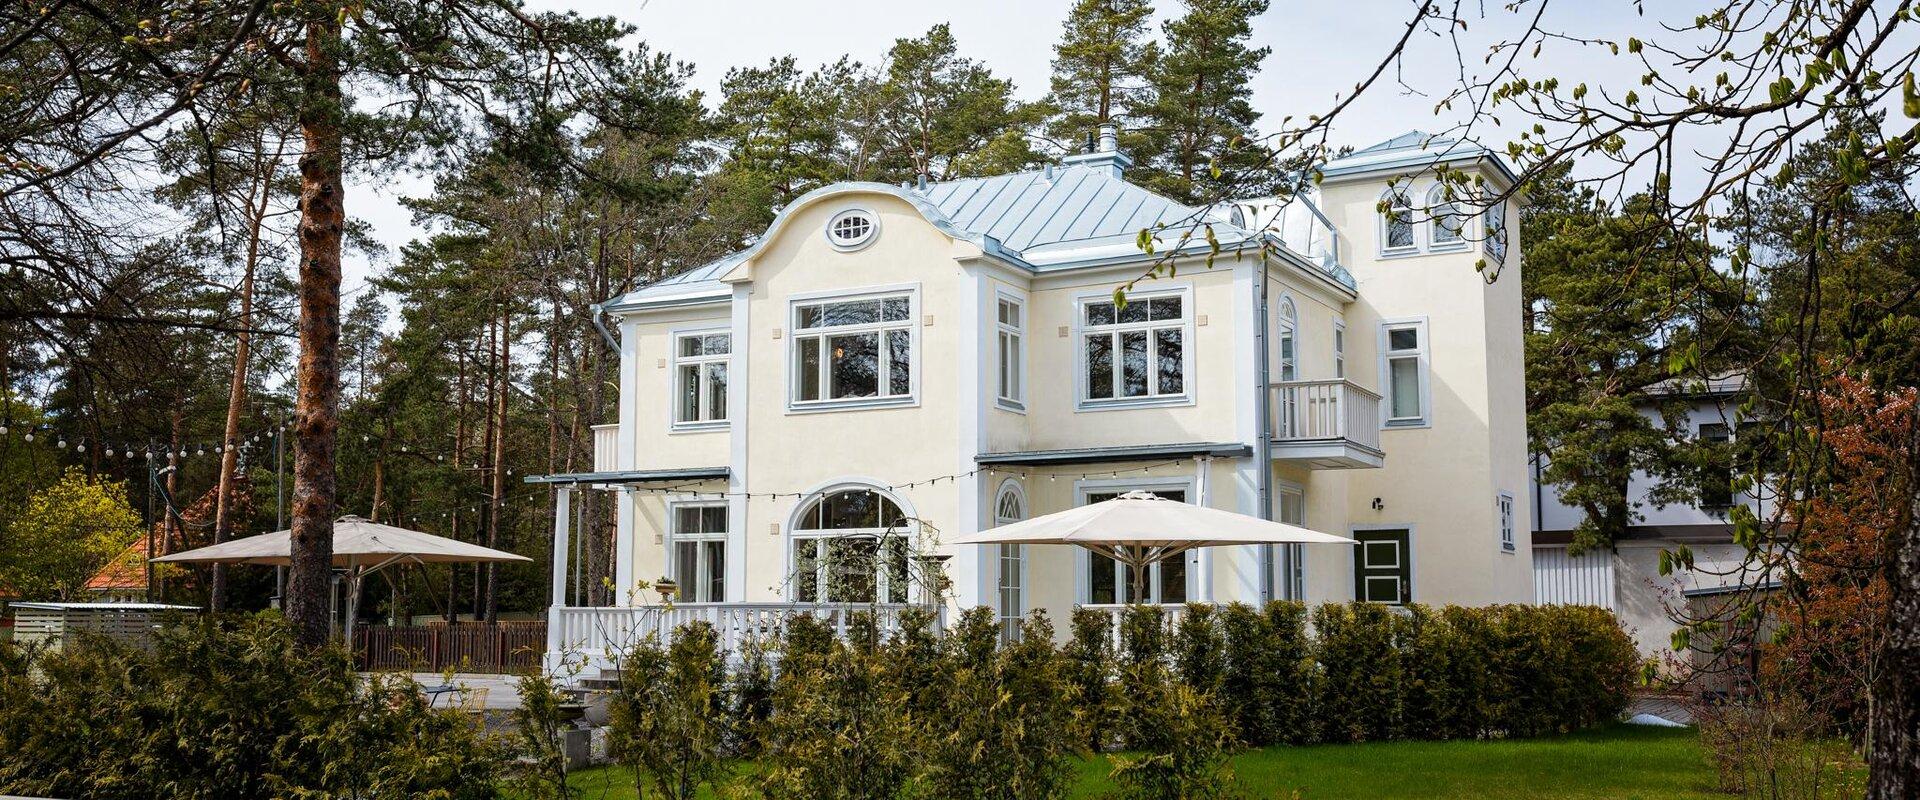 Tallinnas Nõmmel asub imekaunis ja uhke juugendarhitektuuriga villa, kus sulavad ühte kaunis interjöör, taevalik toit ja tipptasemel teenindus. Naudi 